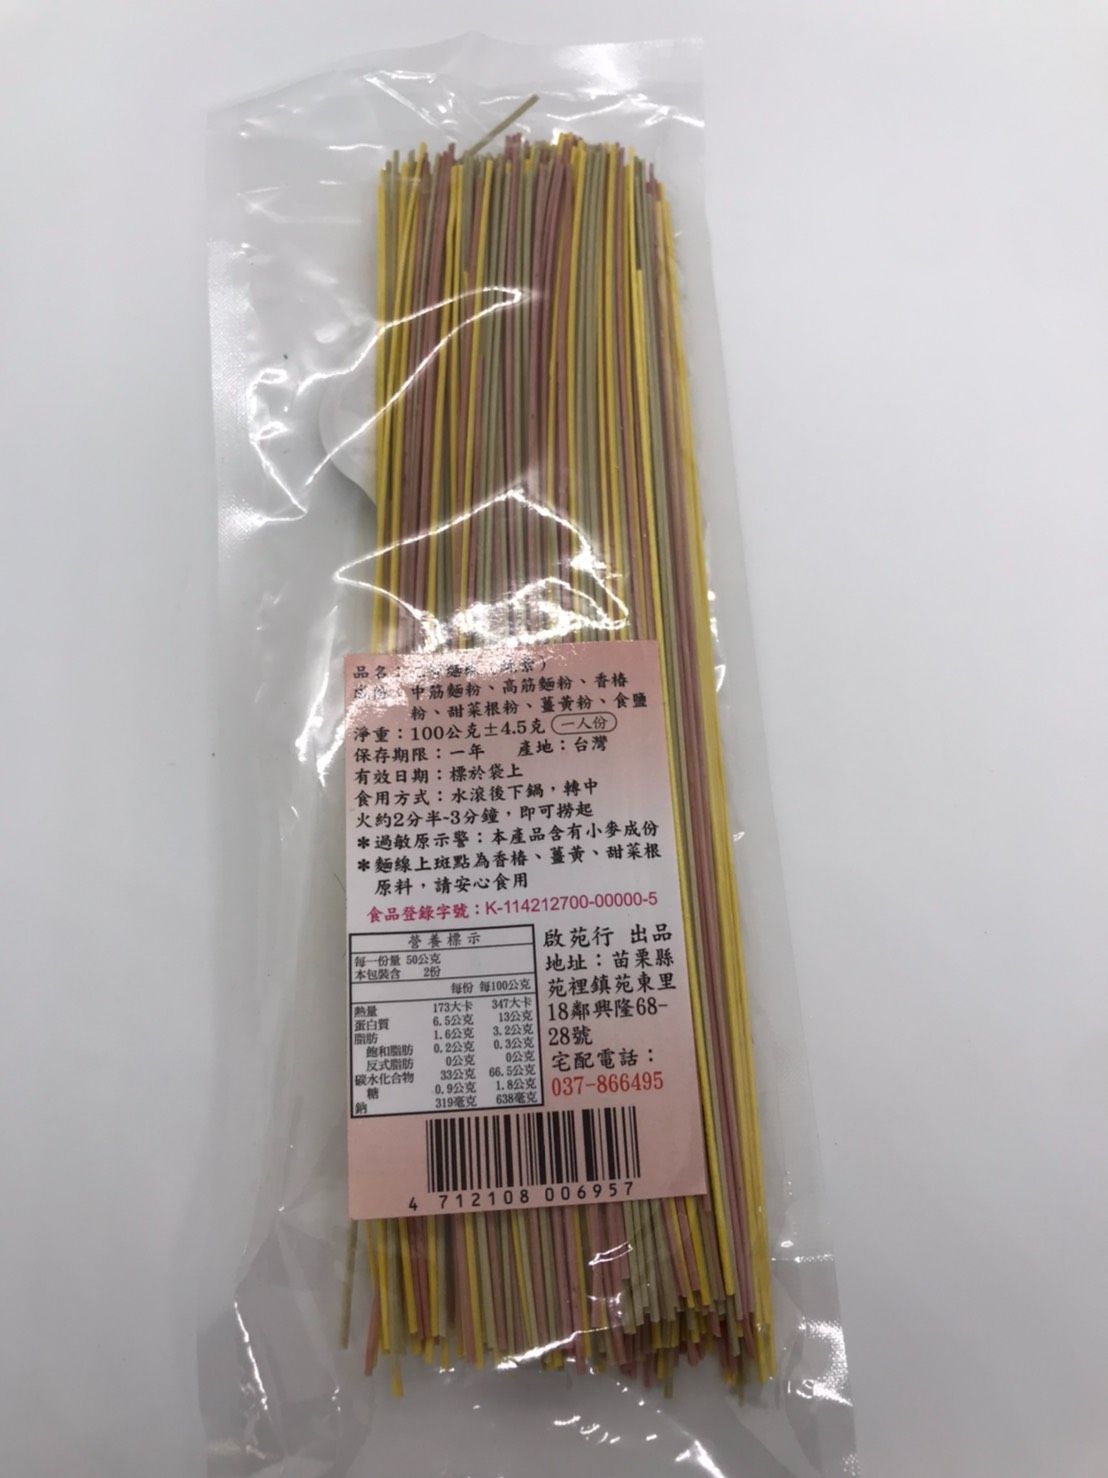 三寶麵線/30元/100g